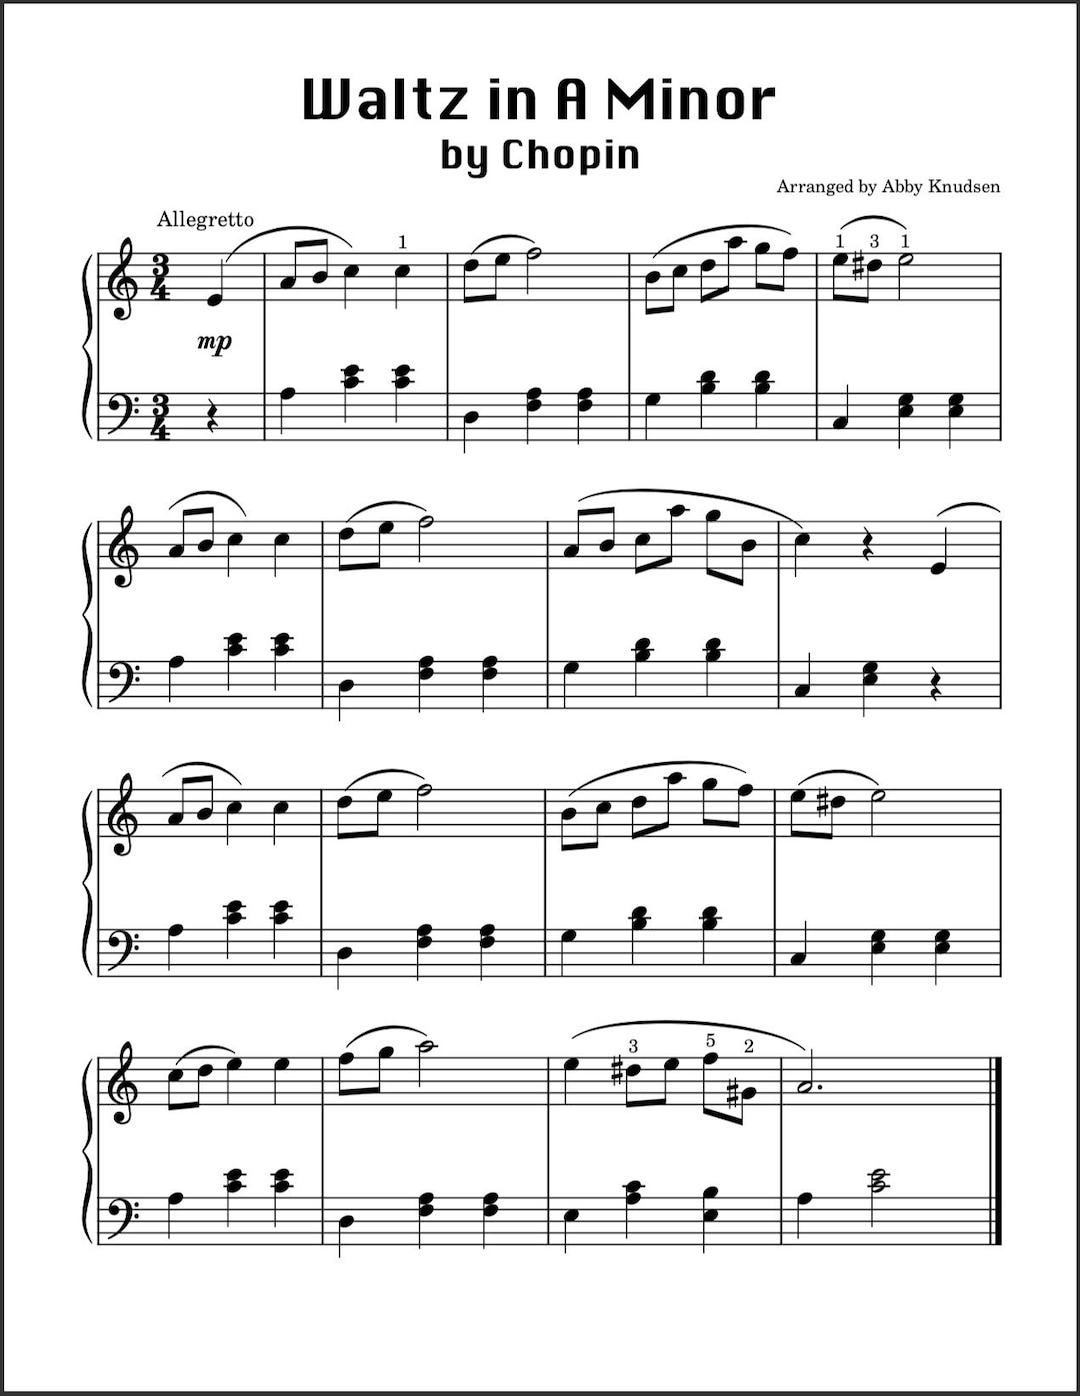 34 Valses Sentimentales Piano - Partituras - Cantorion, partituras y  páginas musicales gratis